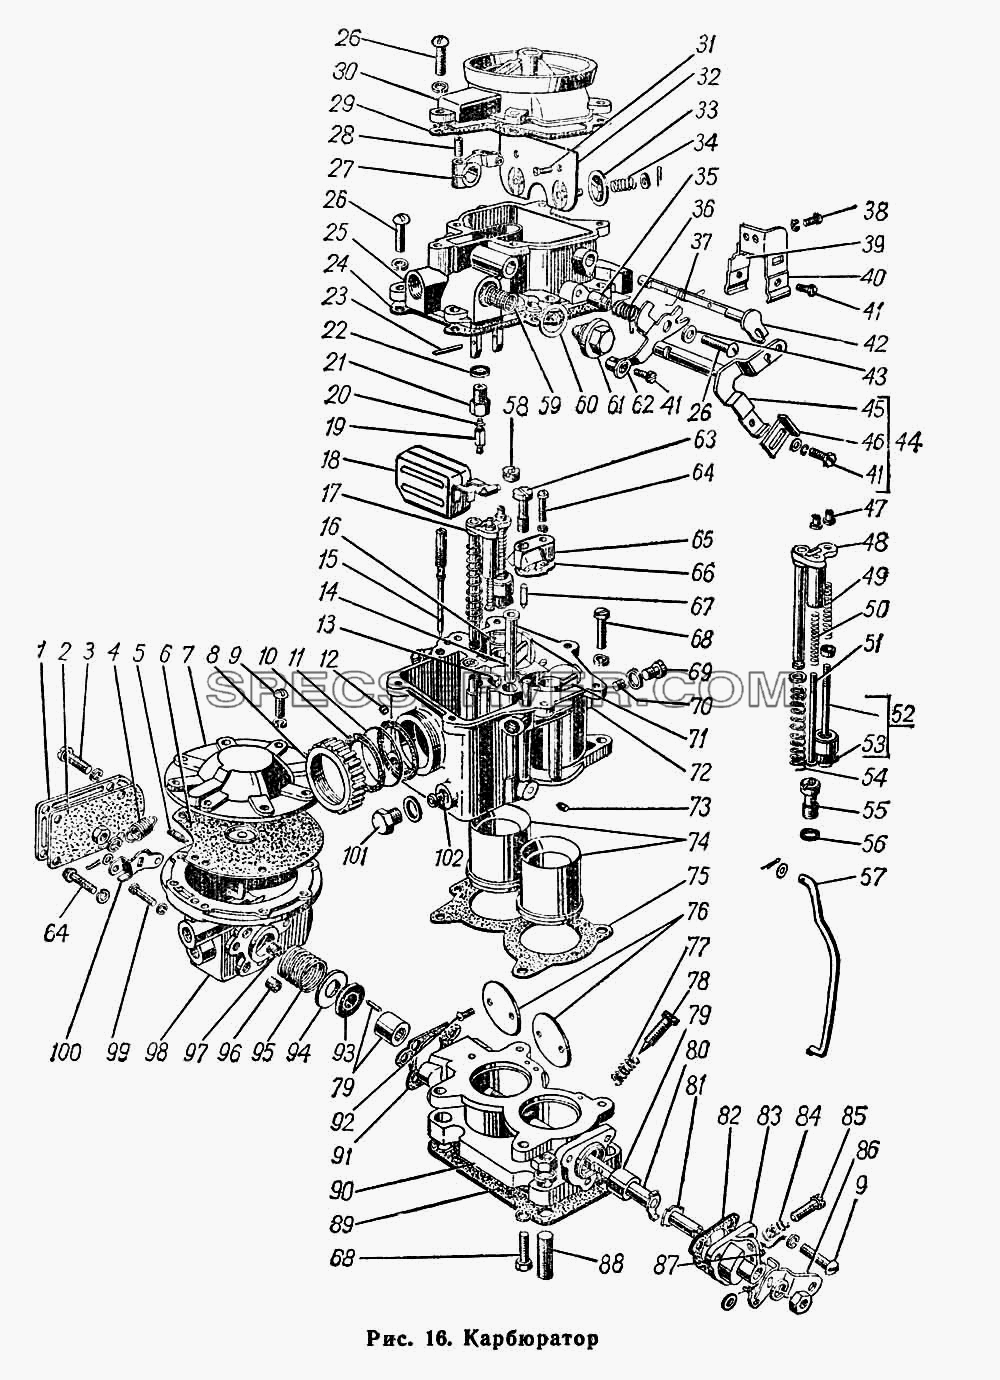 Карбюратор для ГАЗ-66 (Каталога 1983 г.) (список запасных частей)